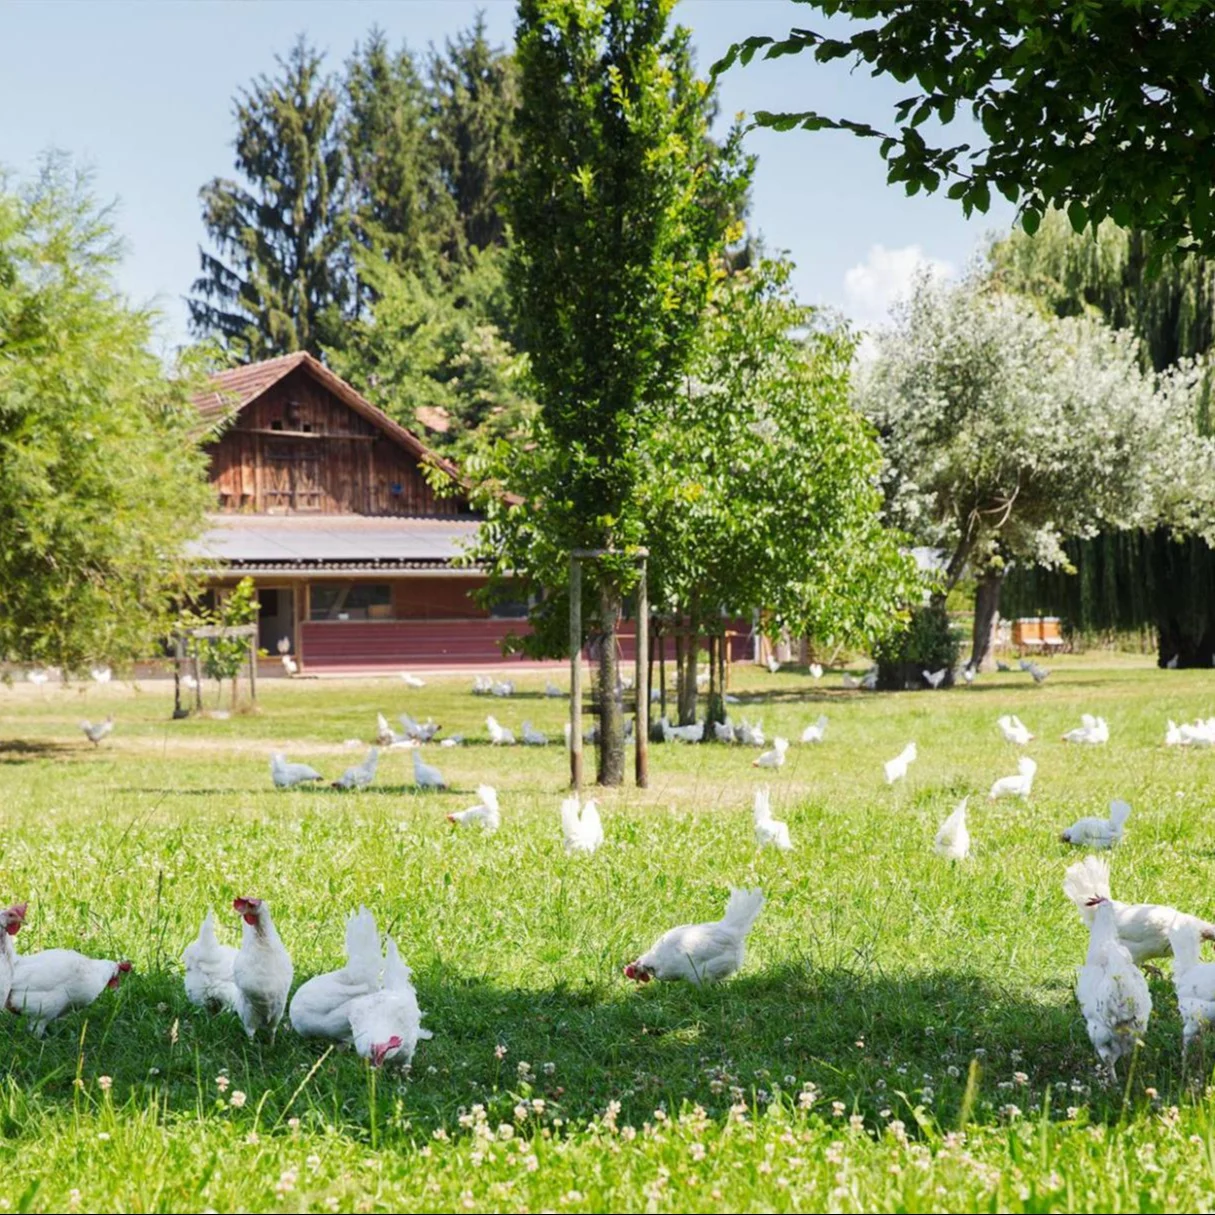 Des poules blanches dans une prairie, à l’ombre de quelques arbres.